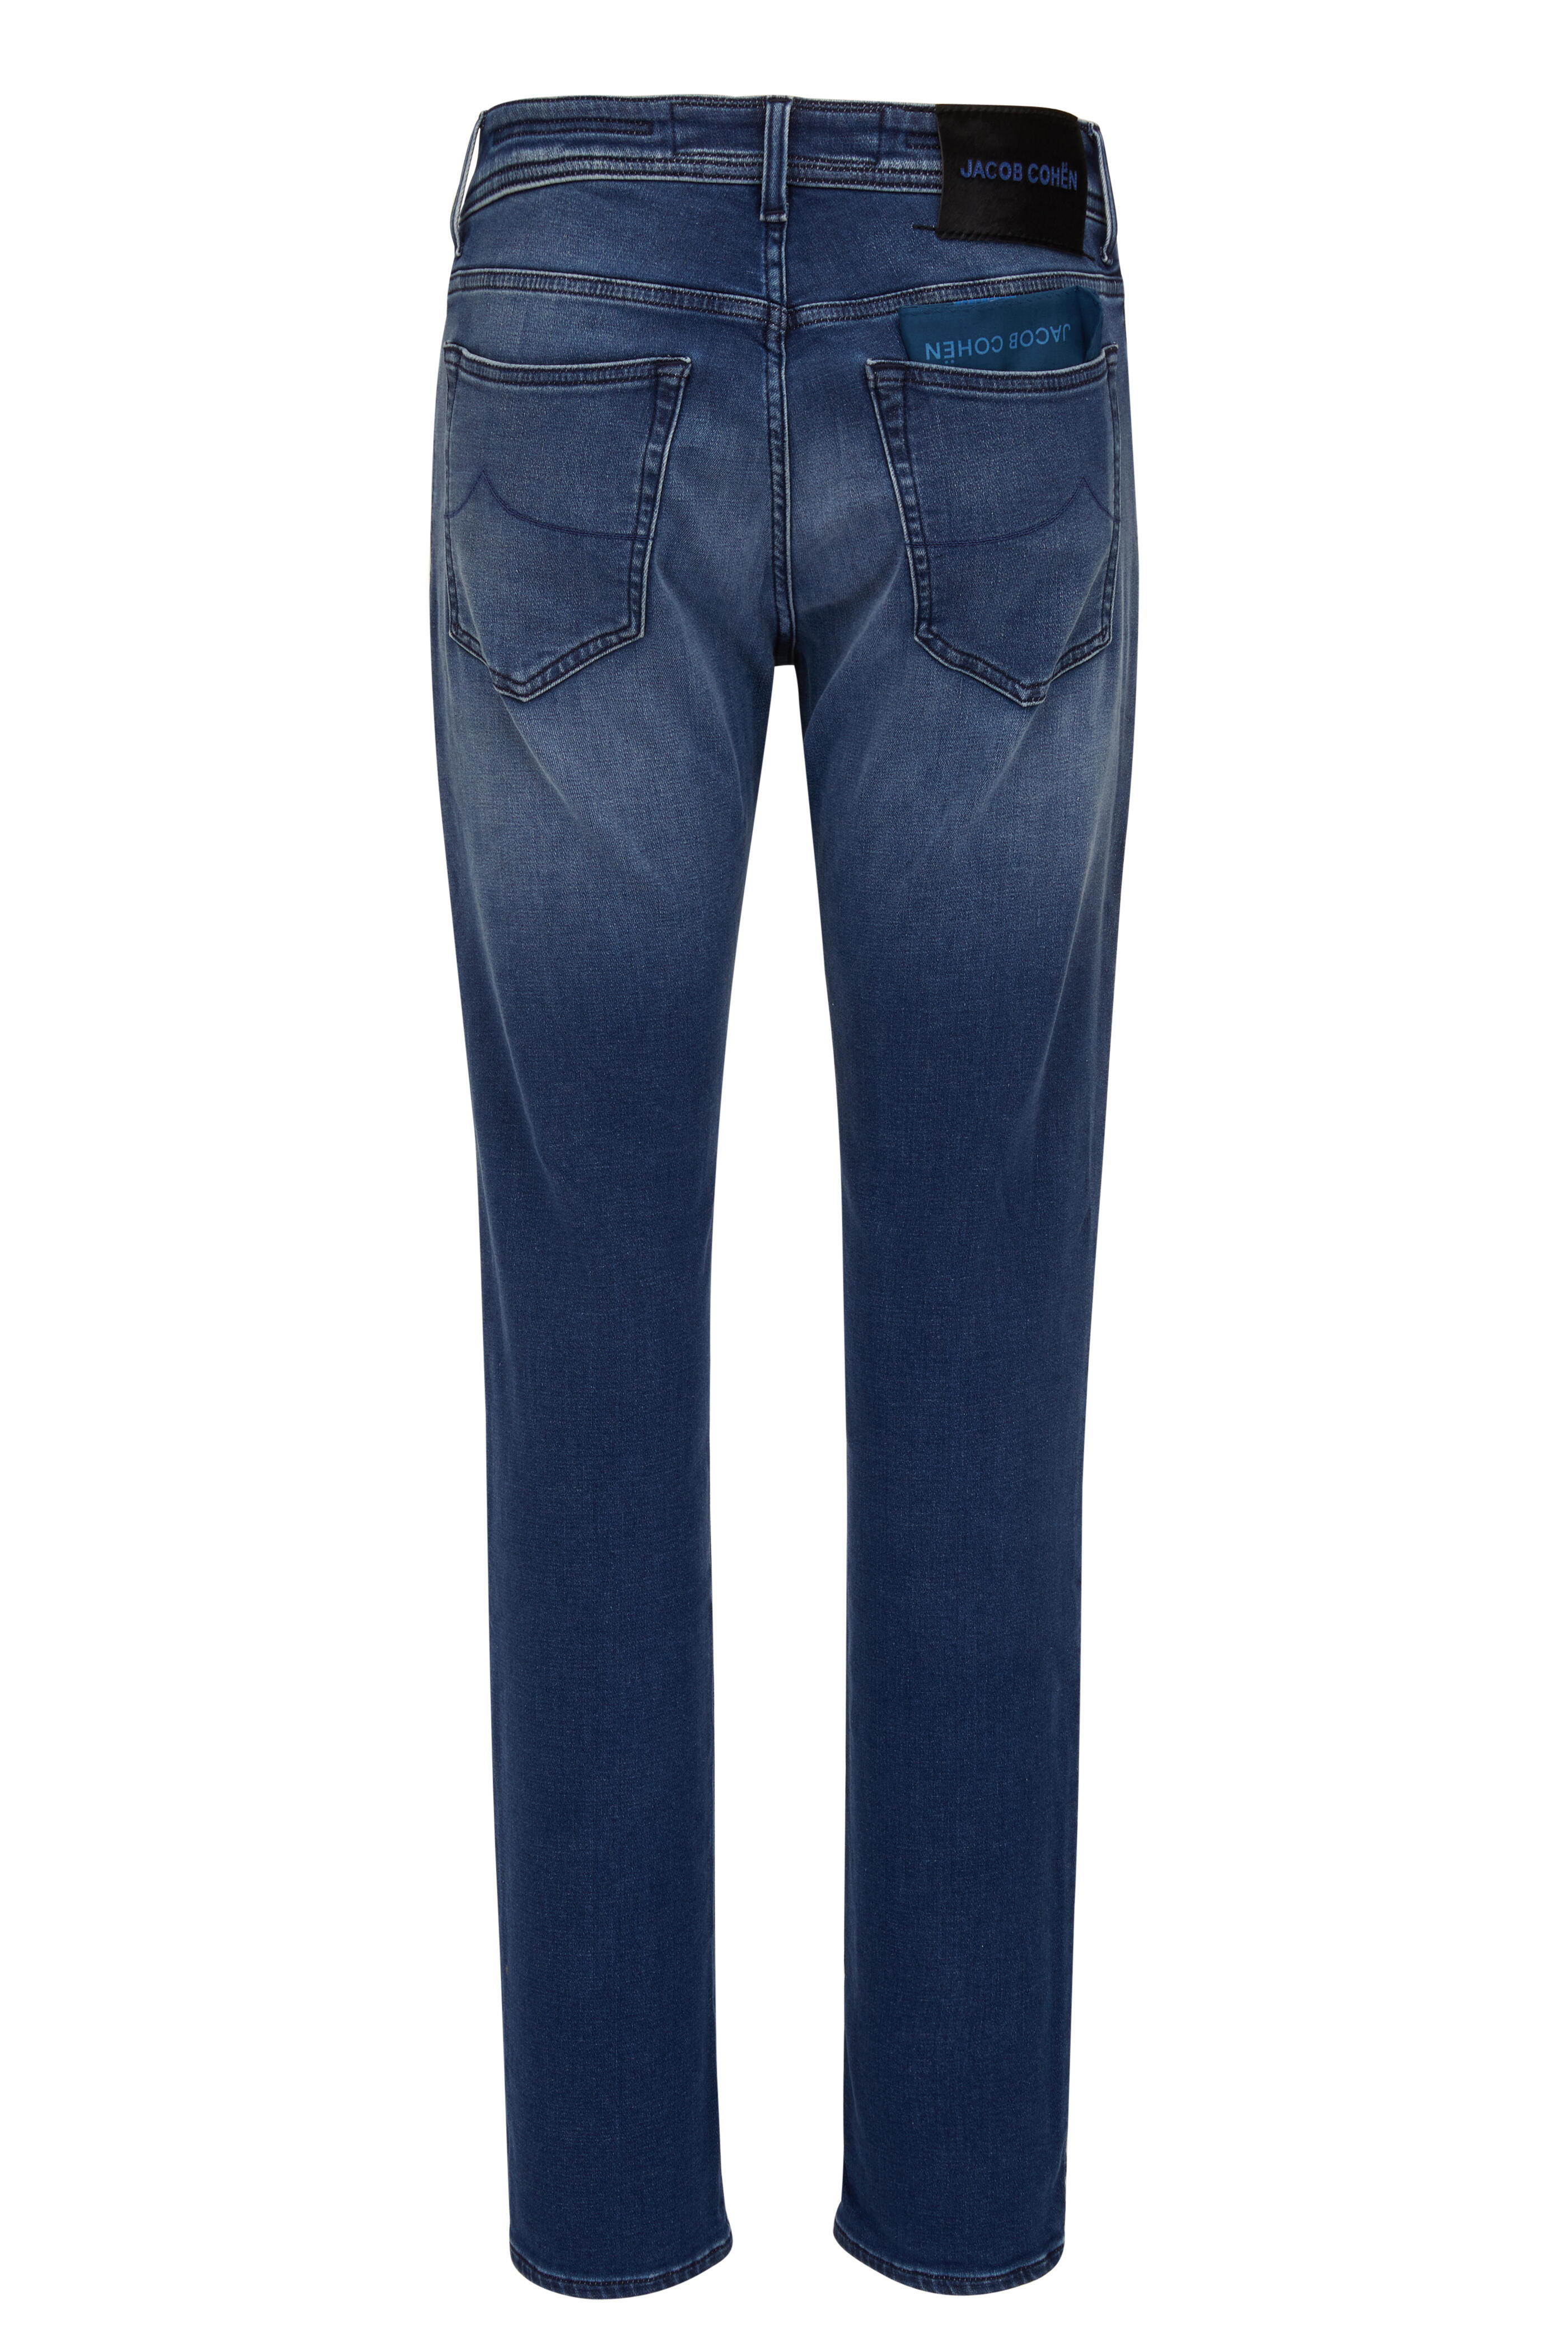 Jacob Cohen Blue Cotton-Like Jeans & Pant – AUMI 4